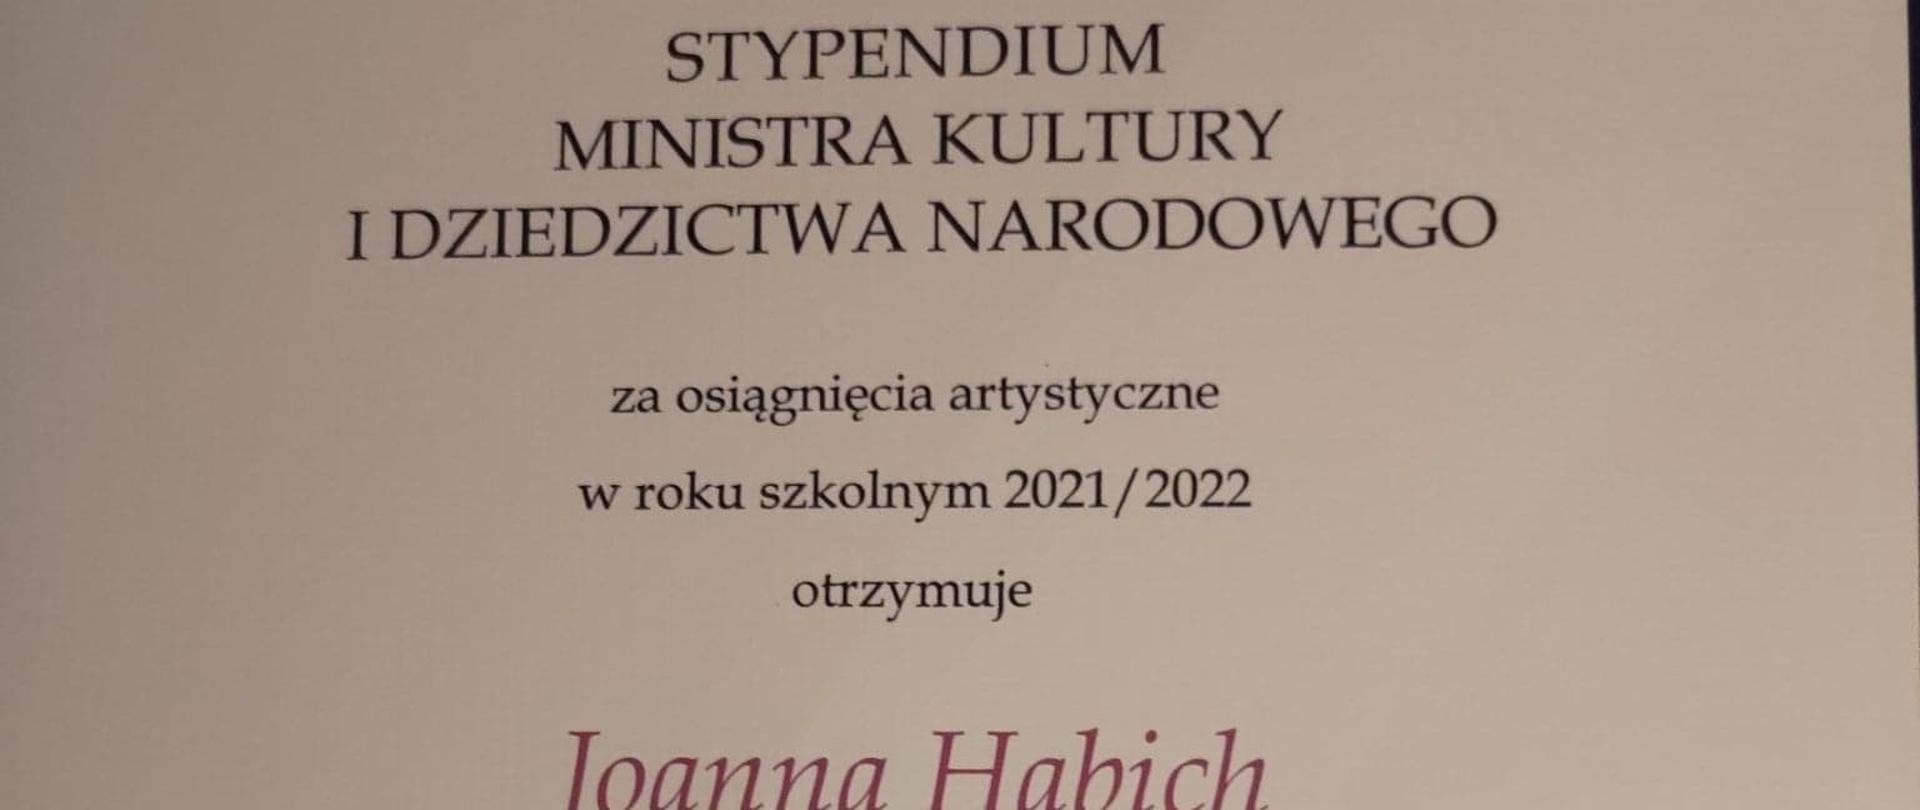 Zdjęcie dyplomu - stypendium Ministra Kultury i Dziedzicwta Narodowego